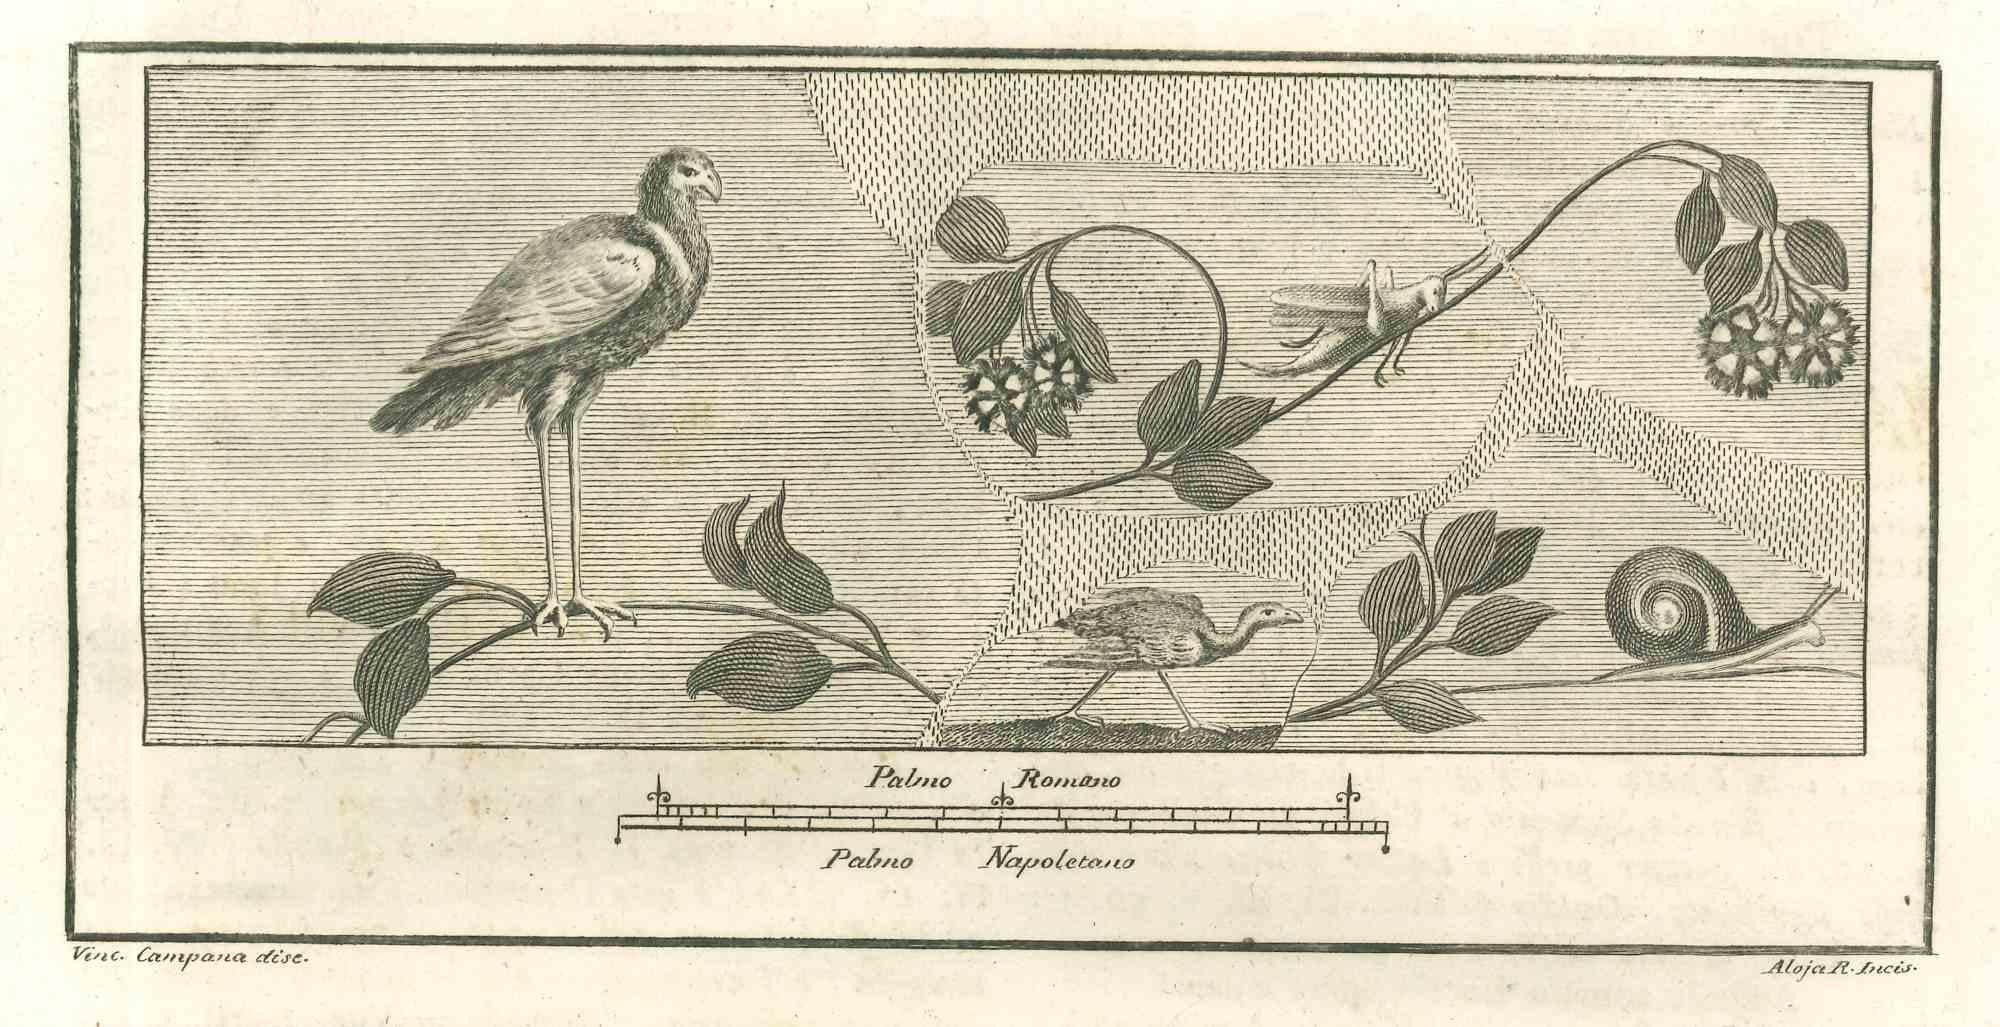 La fresque des oiseaux des "Antiquités d'Herculanum" est une gravure sur papier réalisée par Giuseppe Aloja au XVIIIe siècle.

Signé sur la plaque.

Bonnes conditions.

La gravure appartient à la suite d'estampes "Antiquités d'Herculanum exposées"